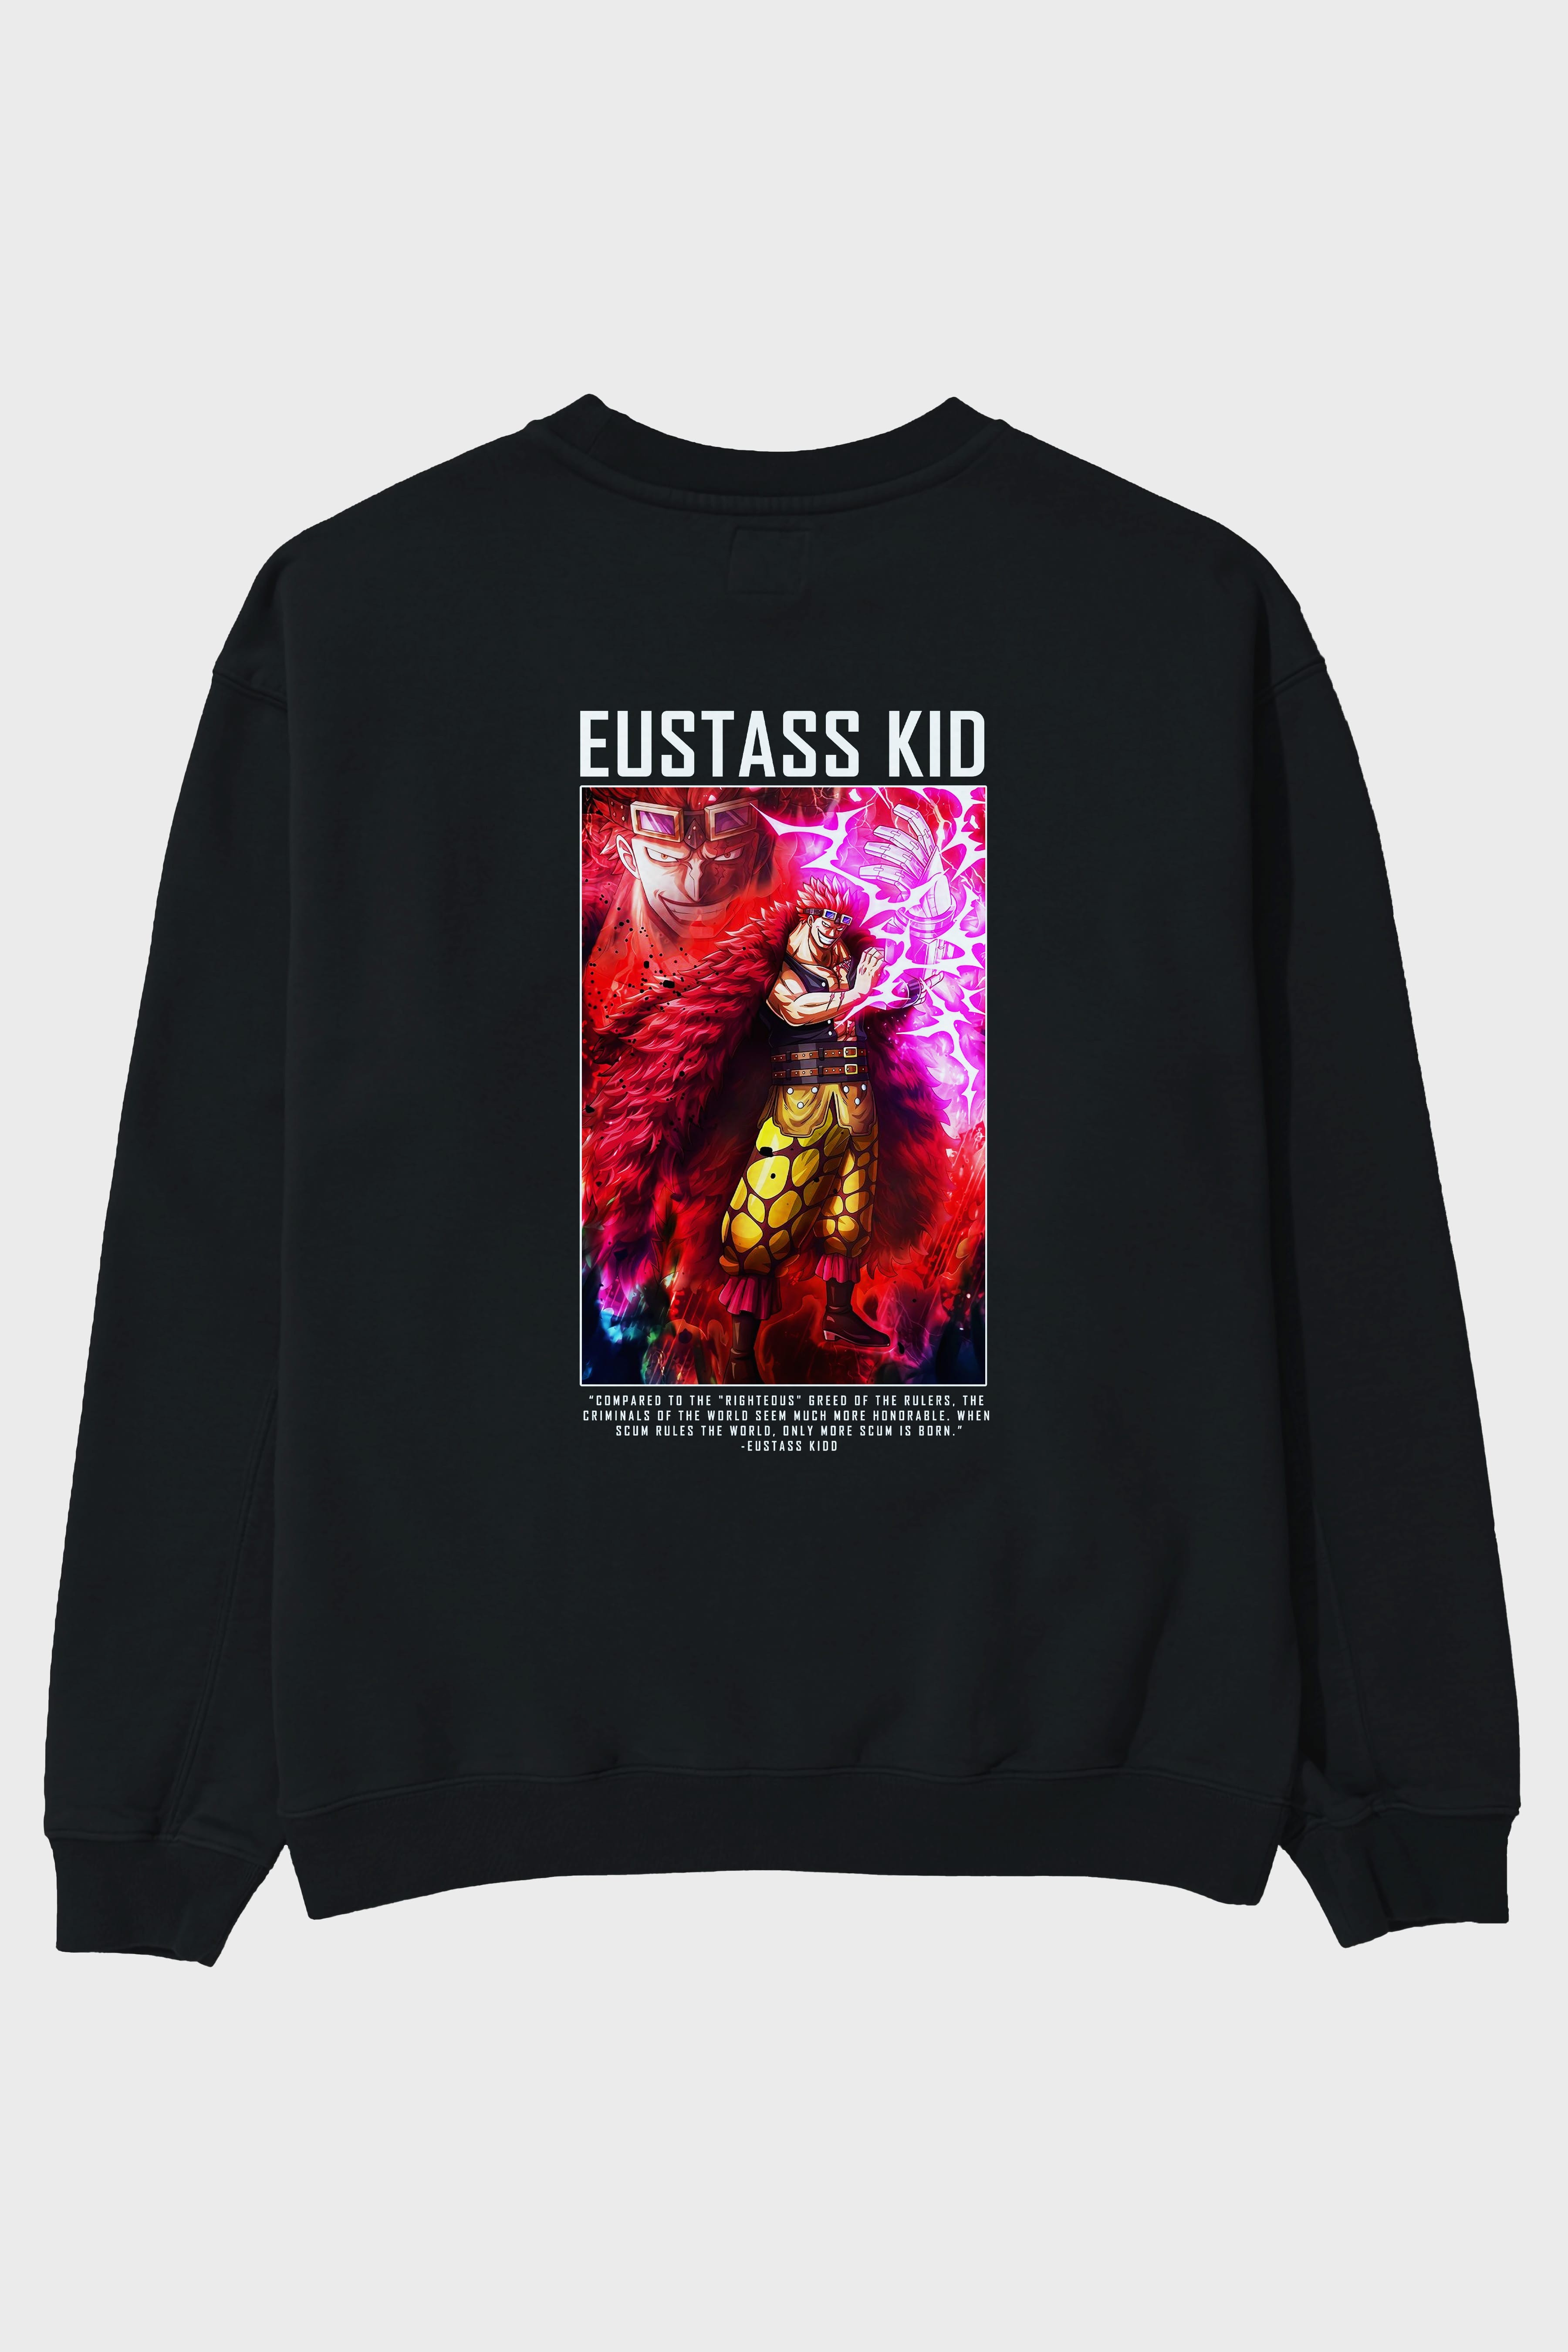 Eustass Kid Arka Baskılı Anime Oversize Sweatshirt Erkek Kadın Unisex